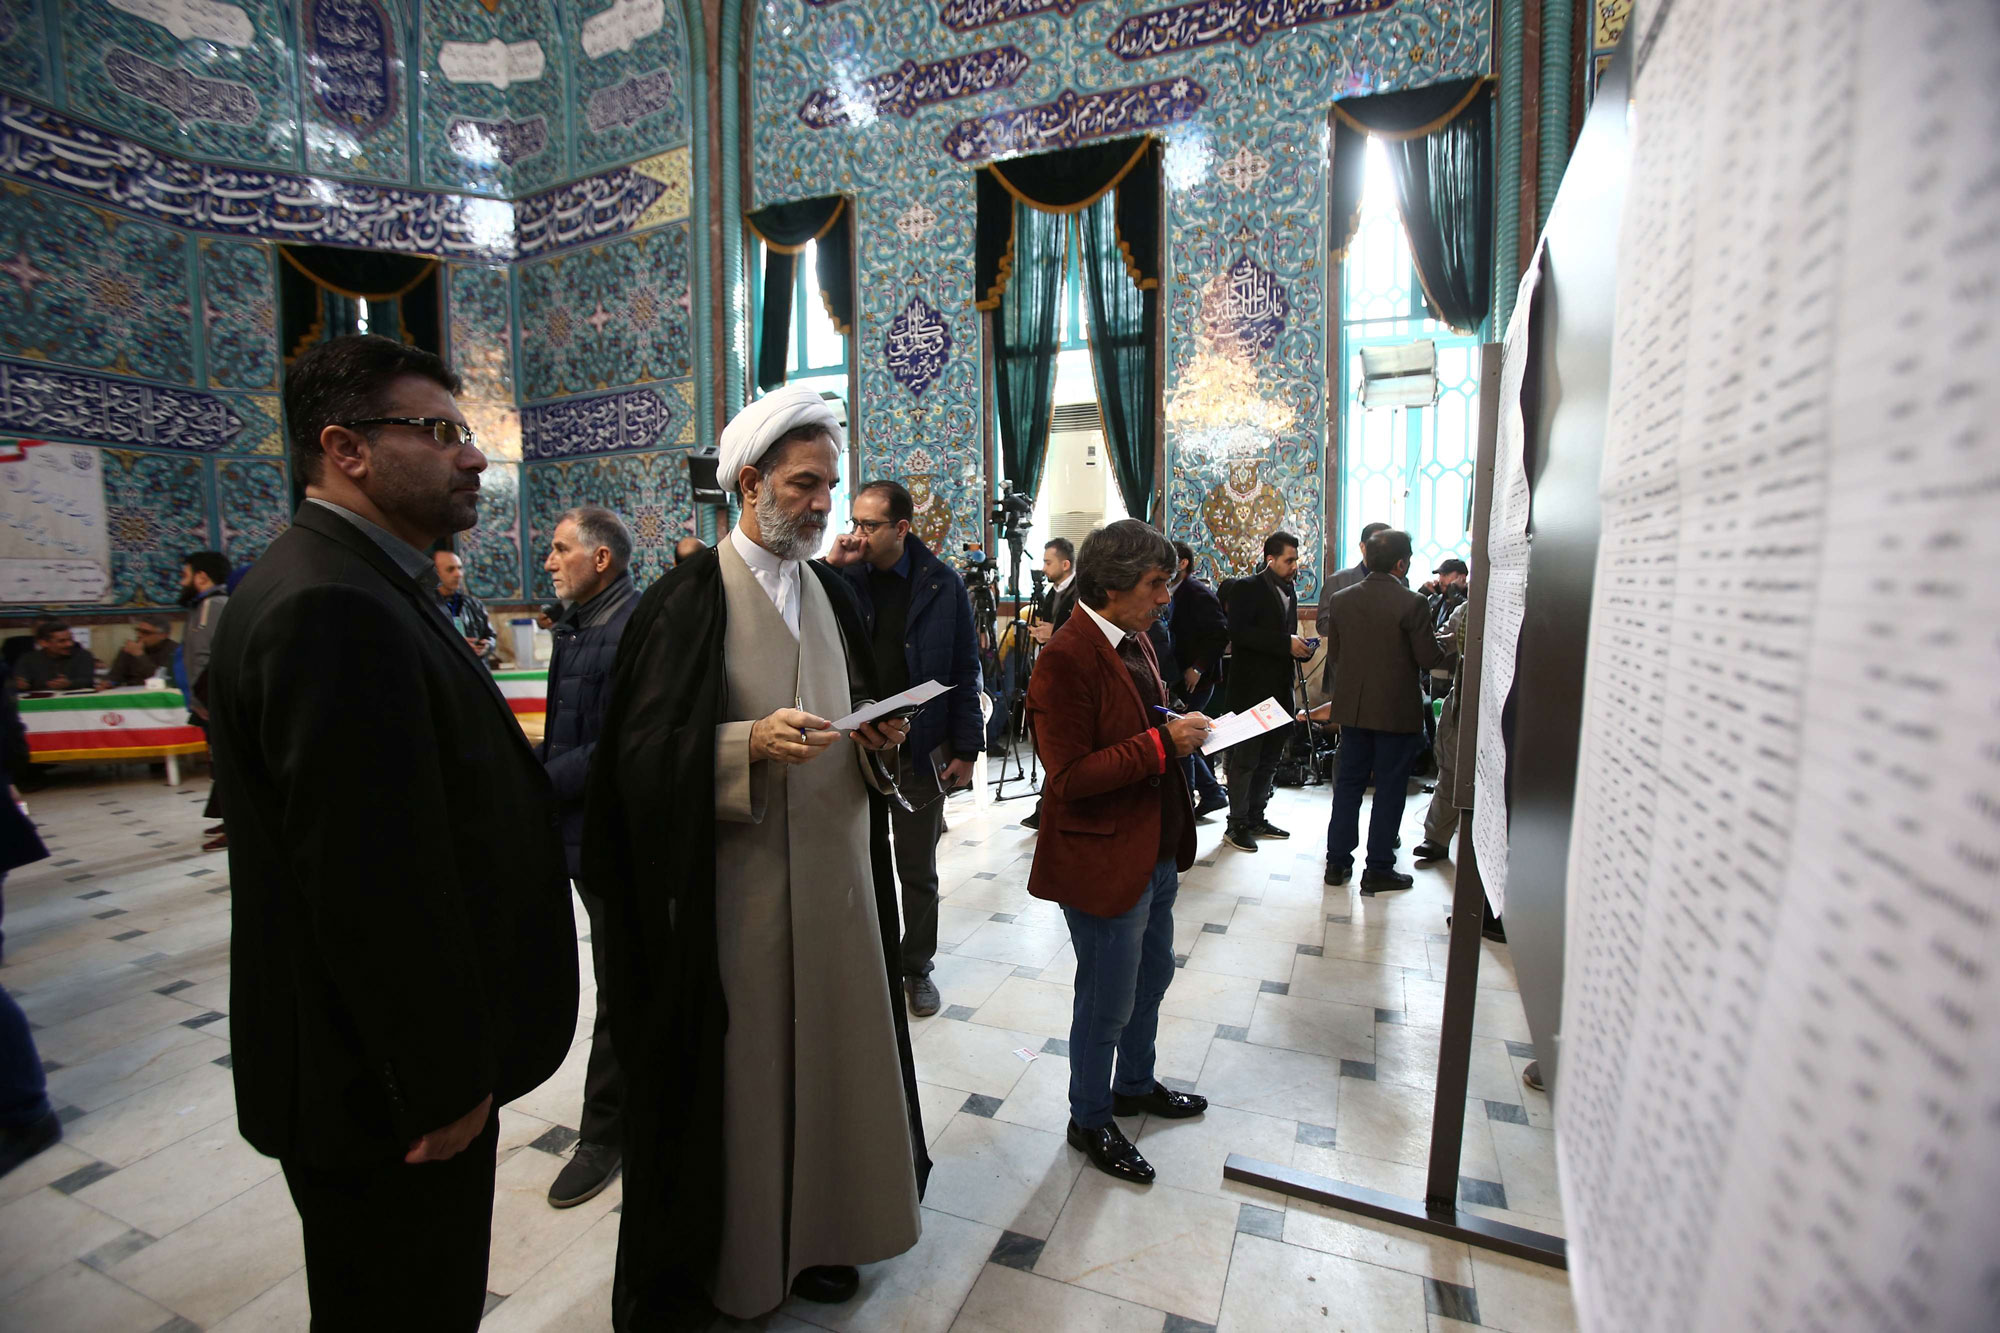 ايران وظفت المنابر الدينية لاستقطاب الناخبين بلا جدوى